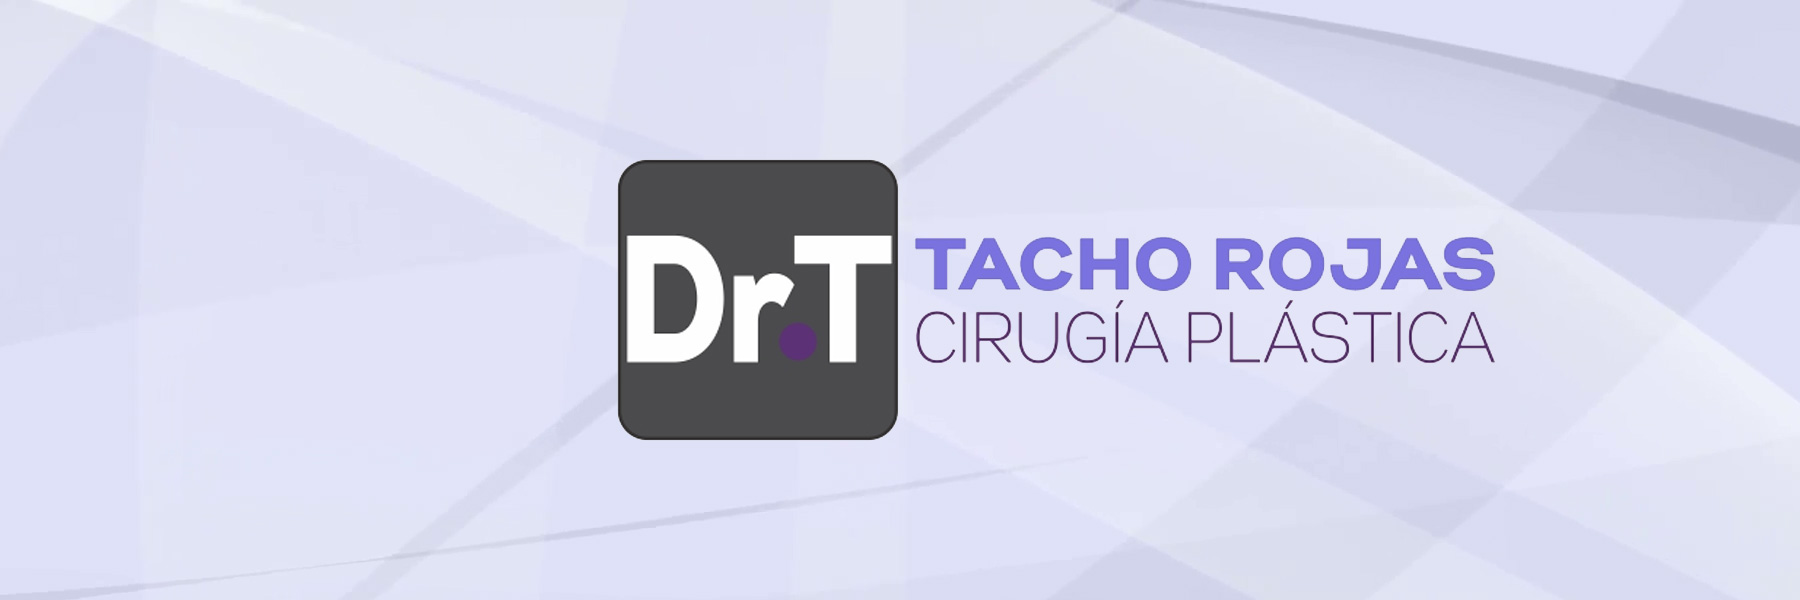 Clinica Dr Tacho Rojas